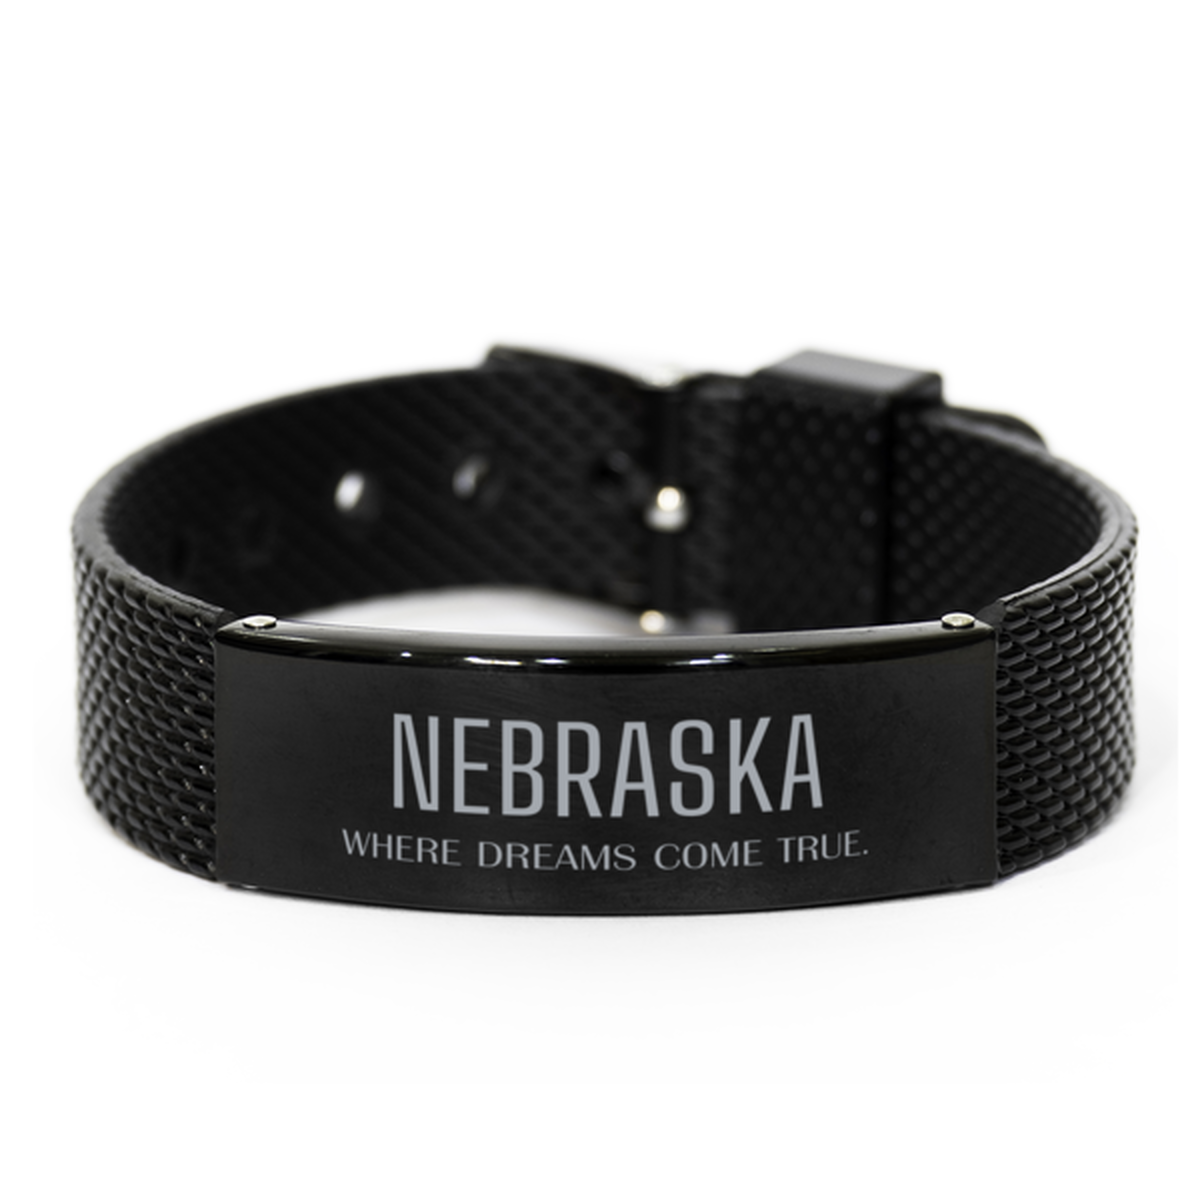 Love Nebraska State Black Shark Mesh Bracelet, Nebraska Where dreams come true, Birthday Inspirational Gifts For Nebraska Men, Women, Friends